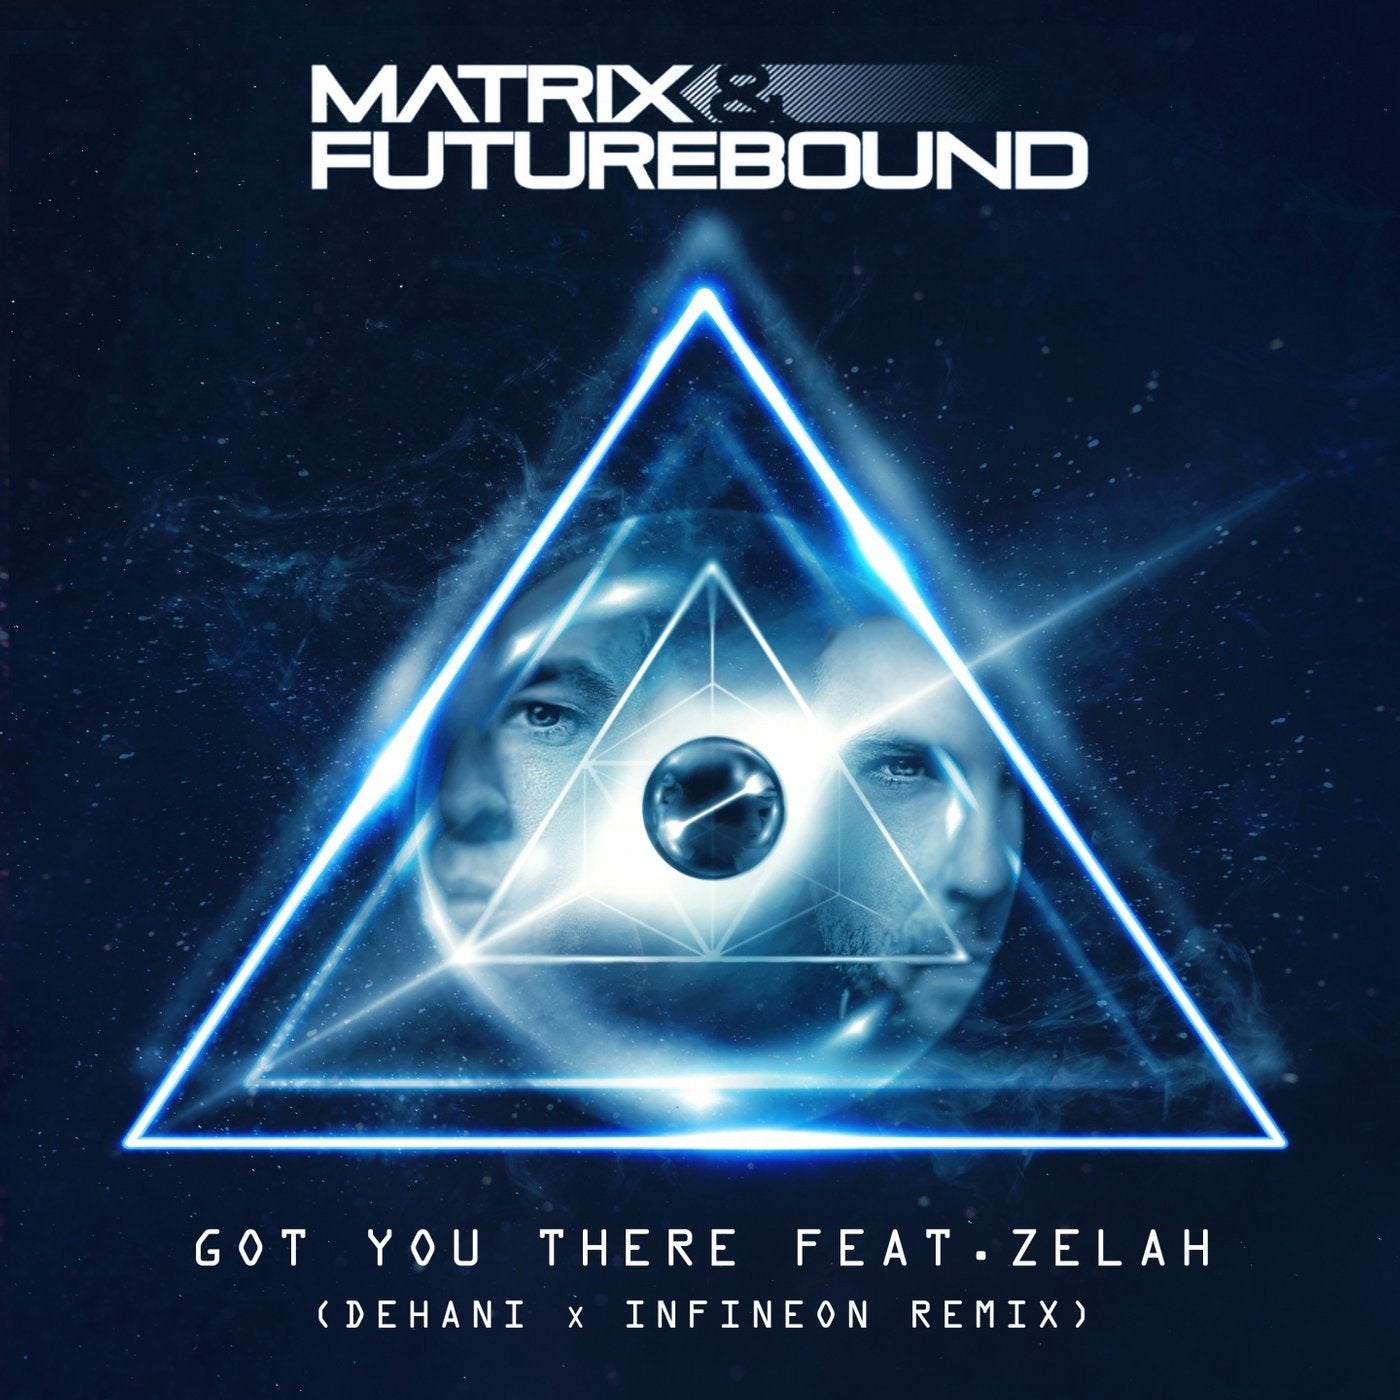 Got You There (feat. Zelah) [Dehani & Infineon Remix]